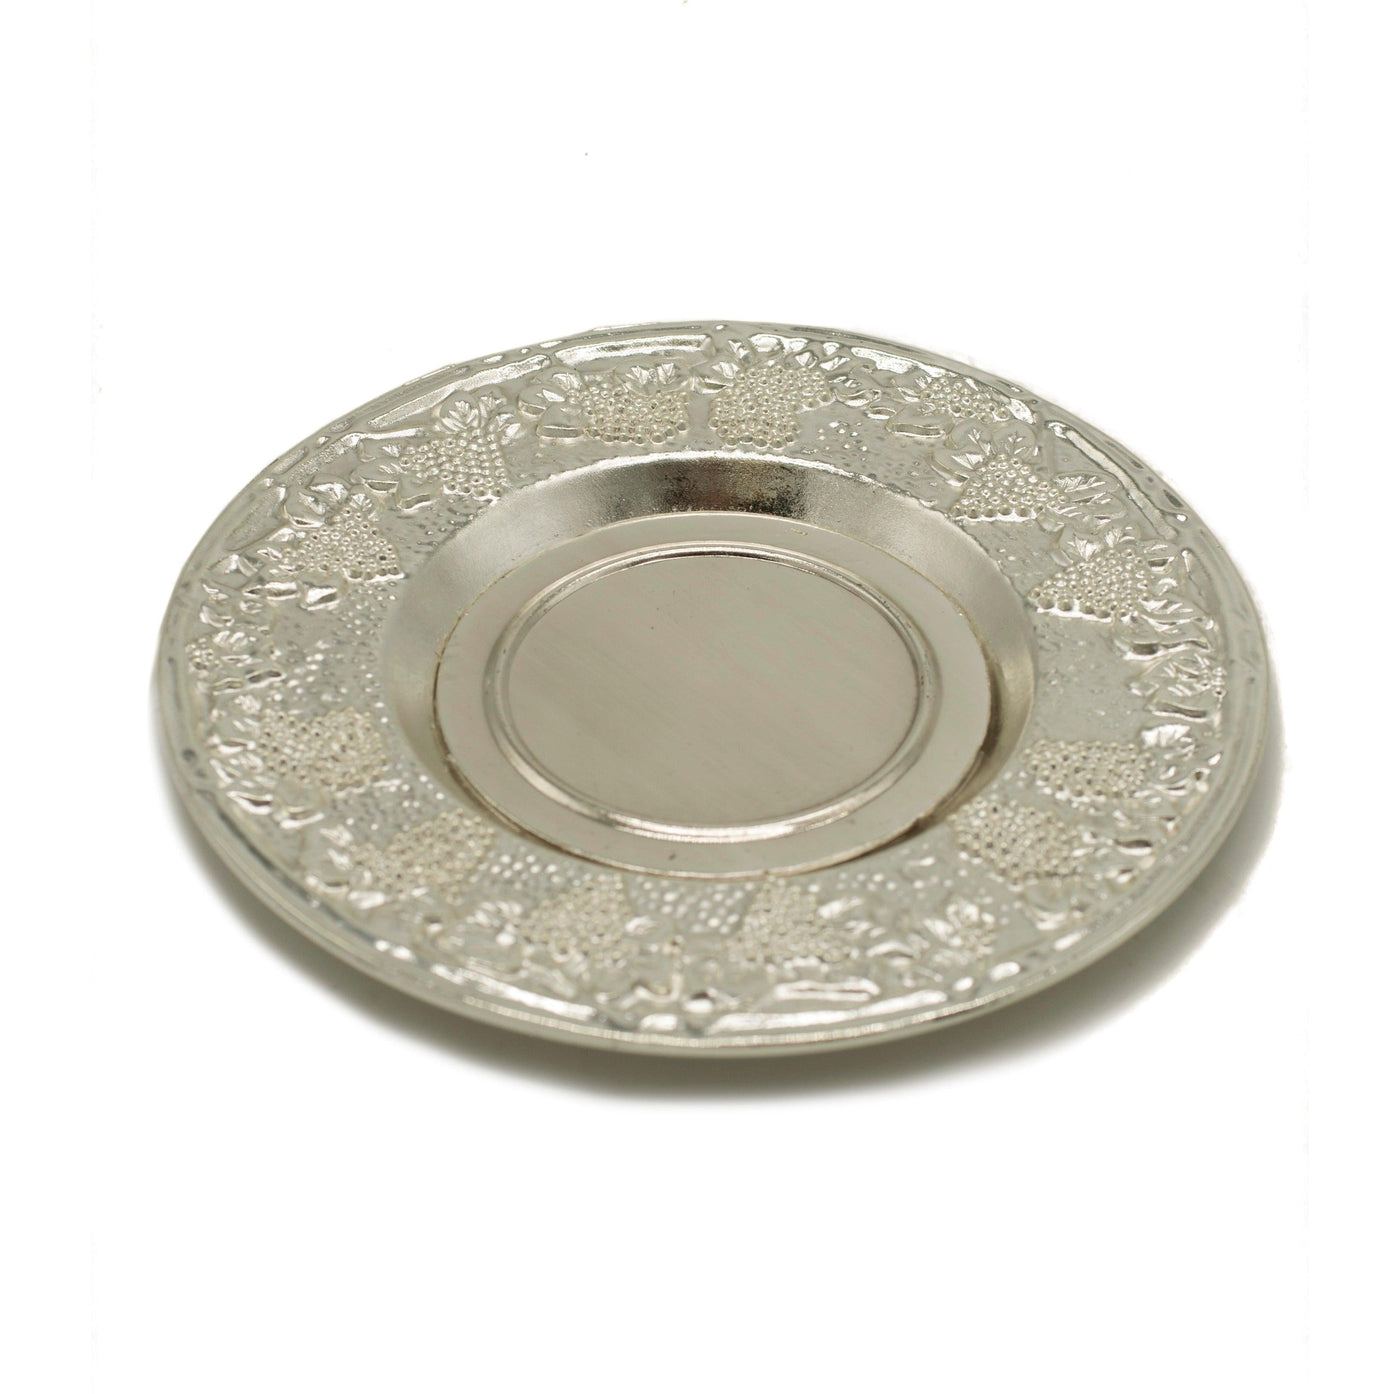 Shabbat Kiddush Metal Cup & Plate Silver Plated Jerusalem Design - Spring Nahal